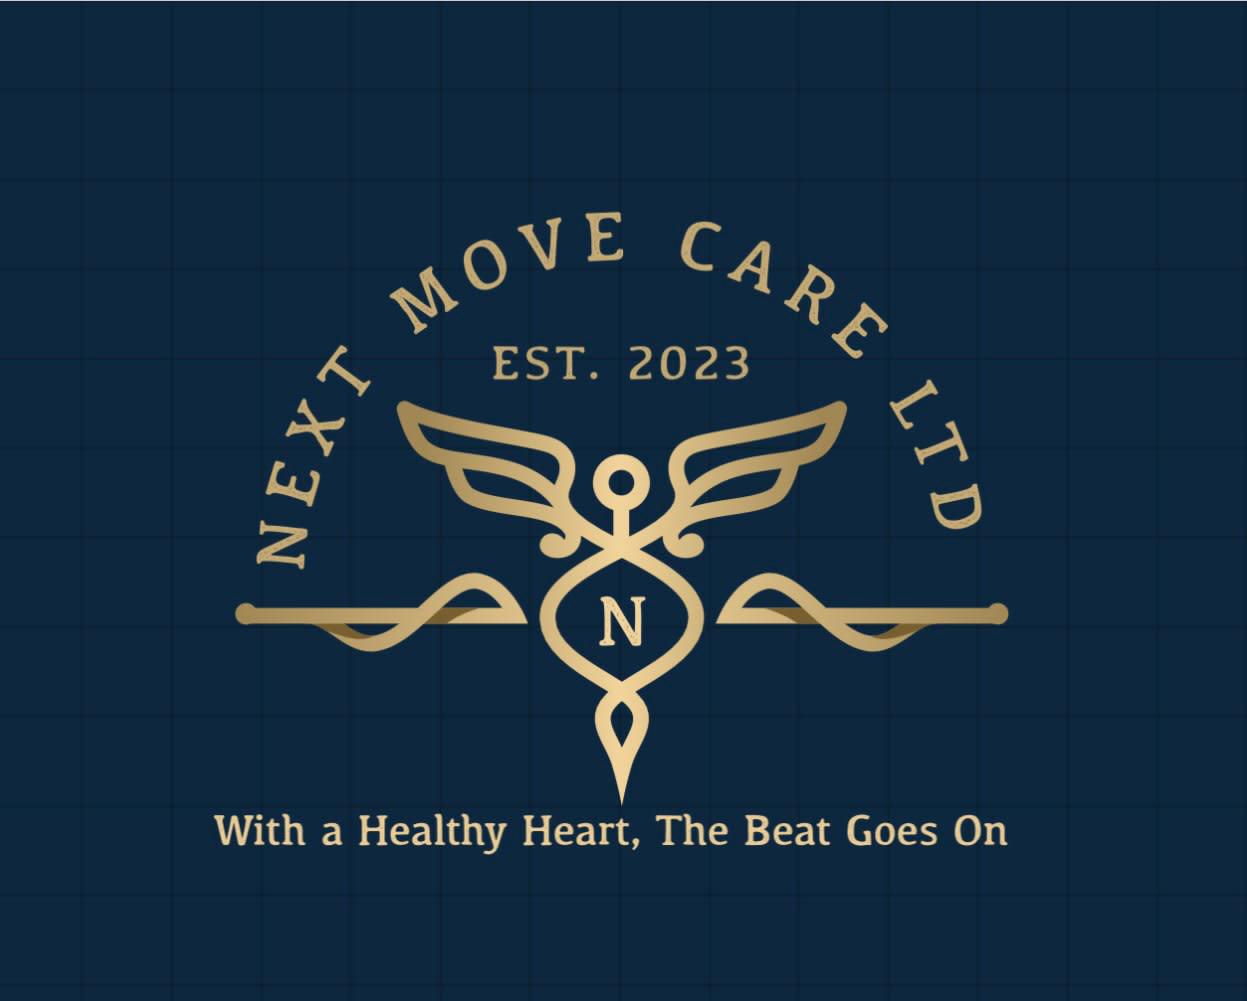 Next Move Care Ltd Oldham 07907 327972